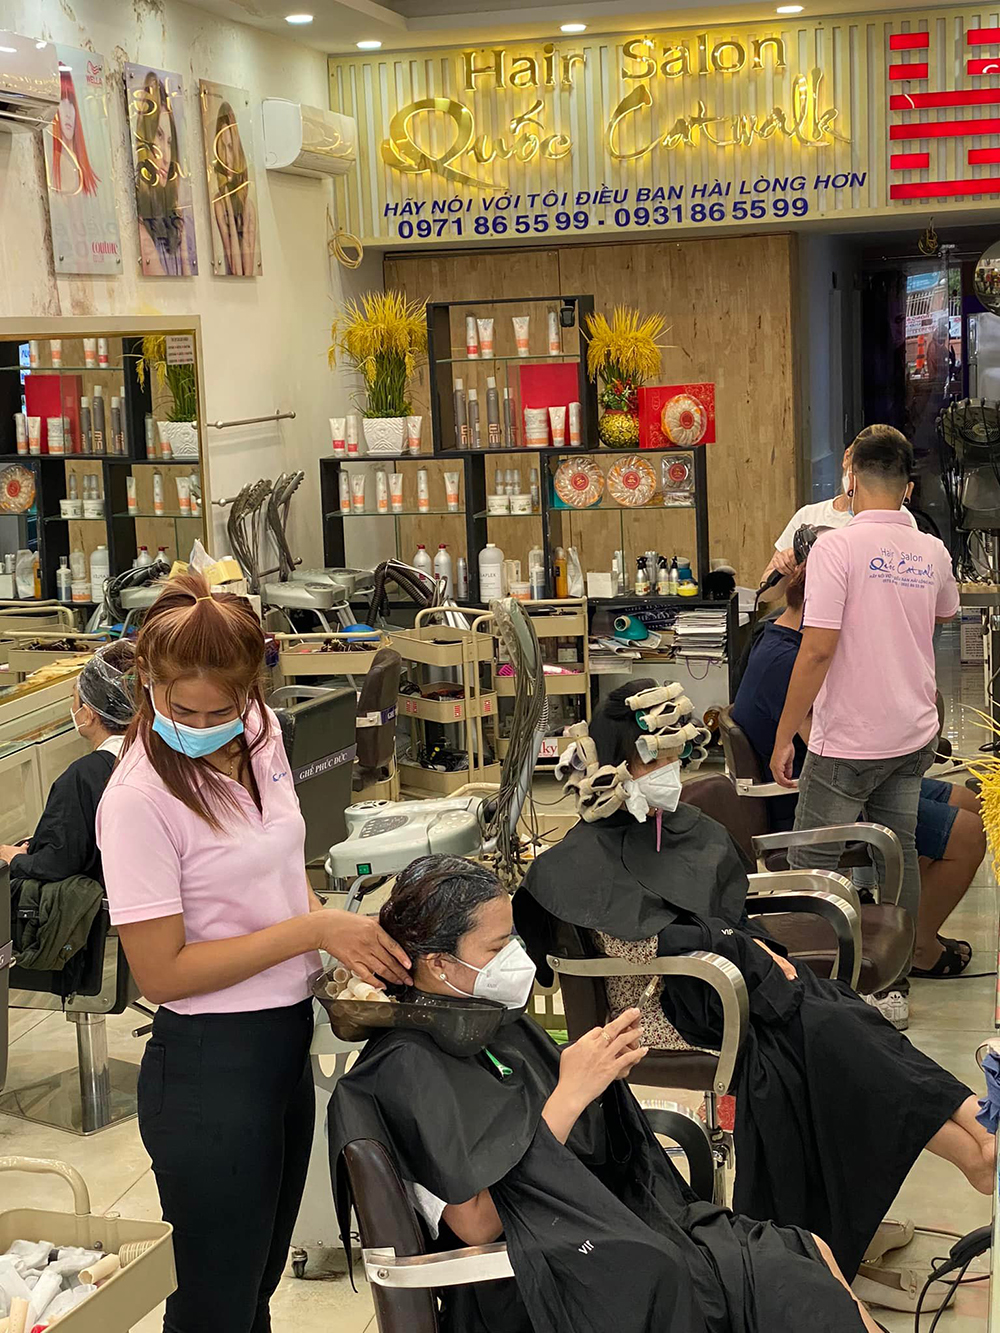 dong phuc nhan vien quoc catwalk hair salon